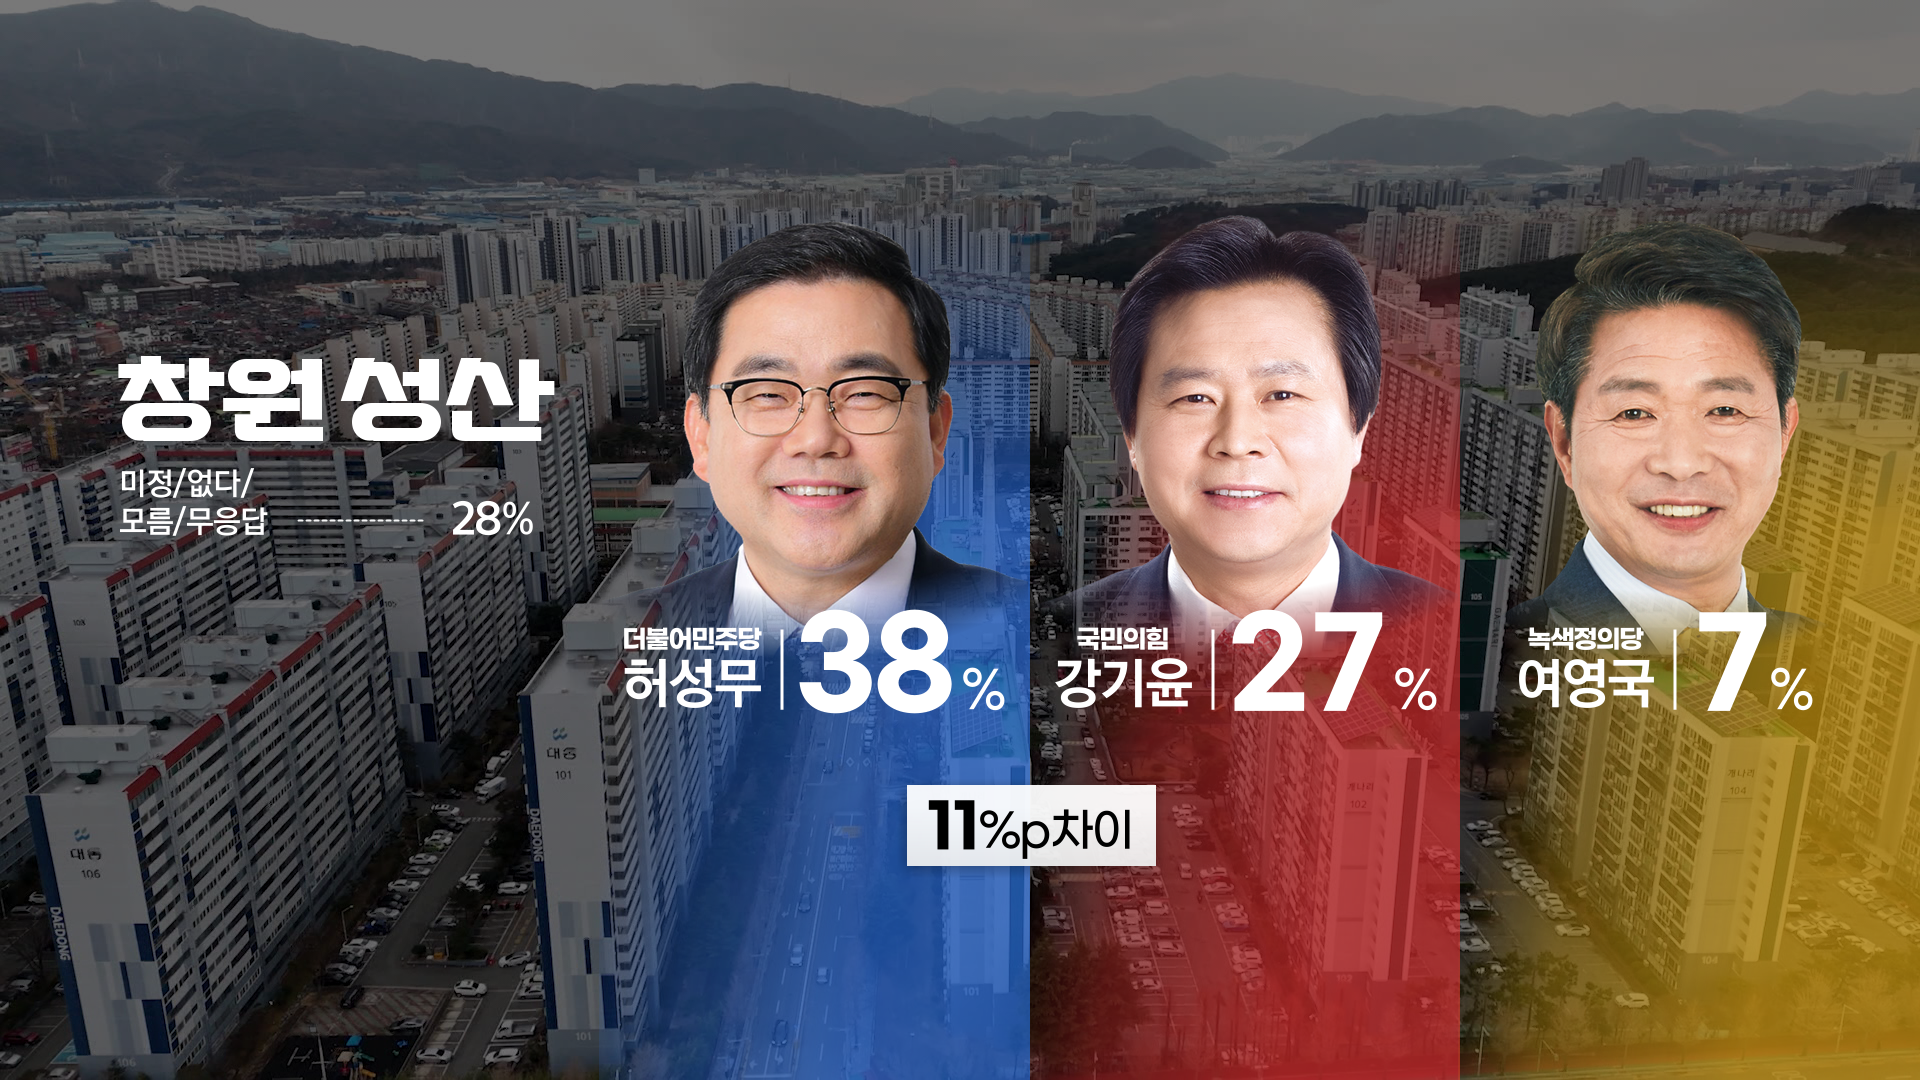 ‘창원 성산’ 2차 여론조사 후보자 가상대결